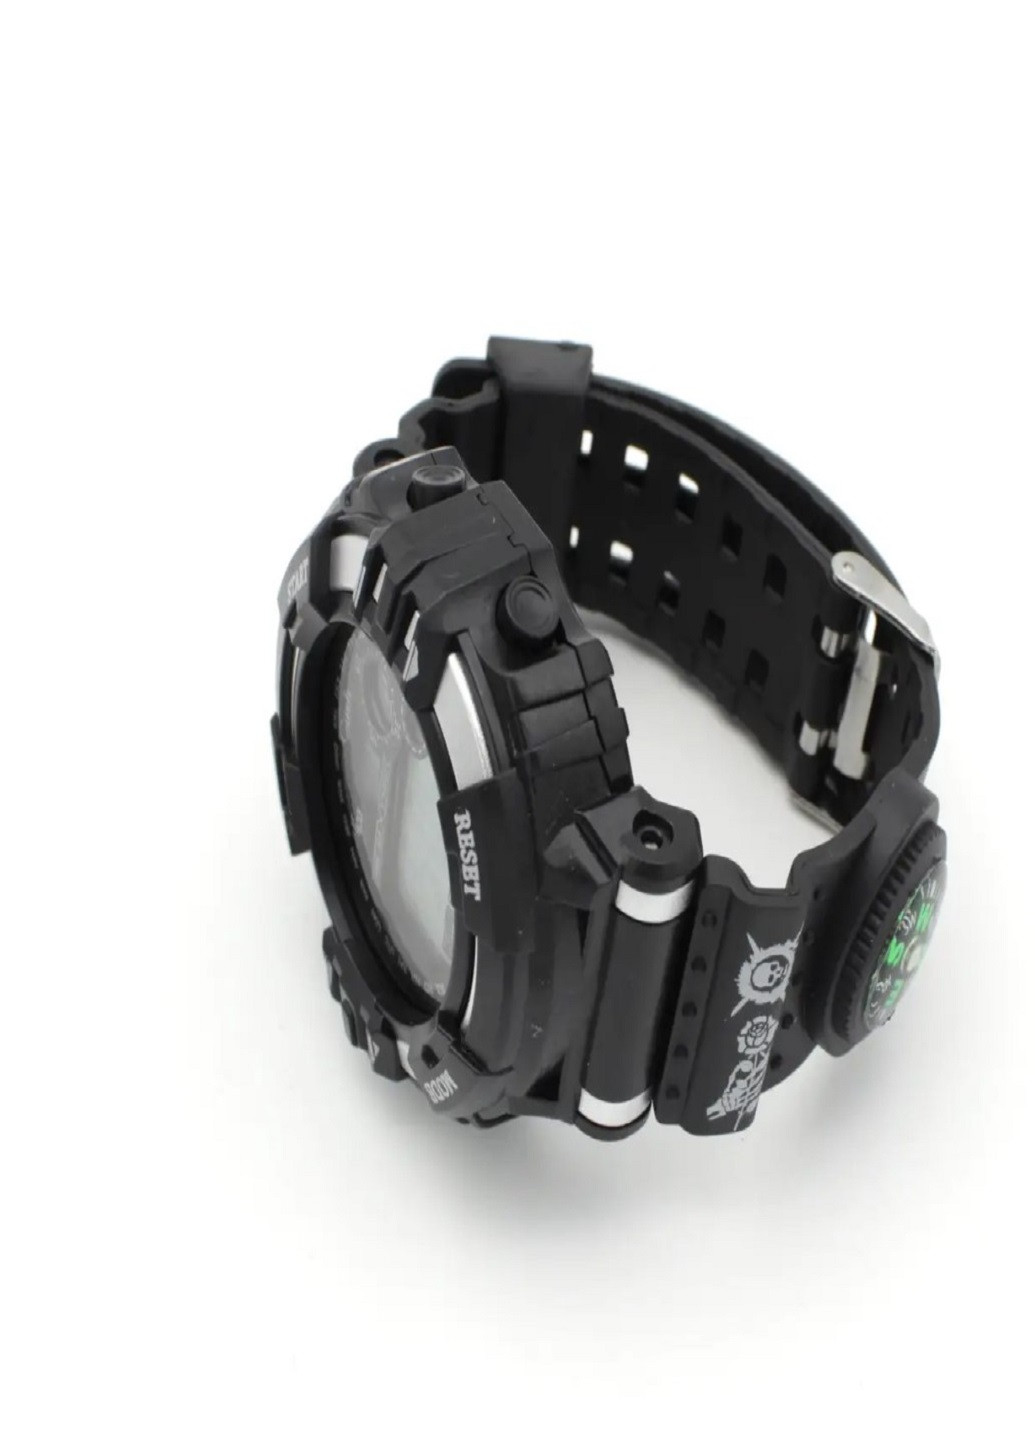 Універсальний водонепроникний наручний годинник з компасом Giish KL Чорний з Сірим VTech (259036307)